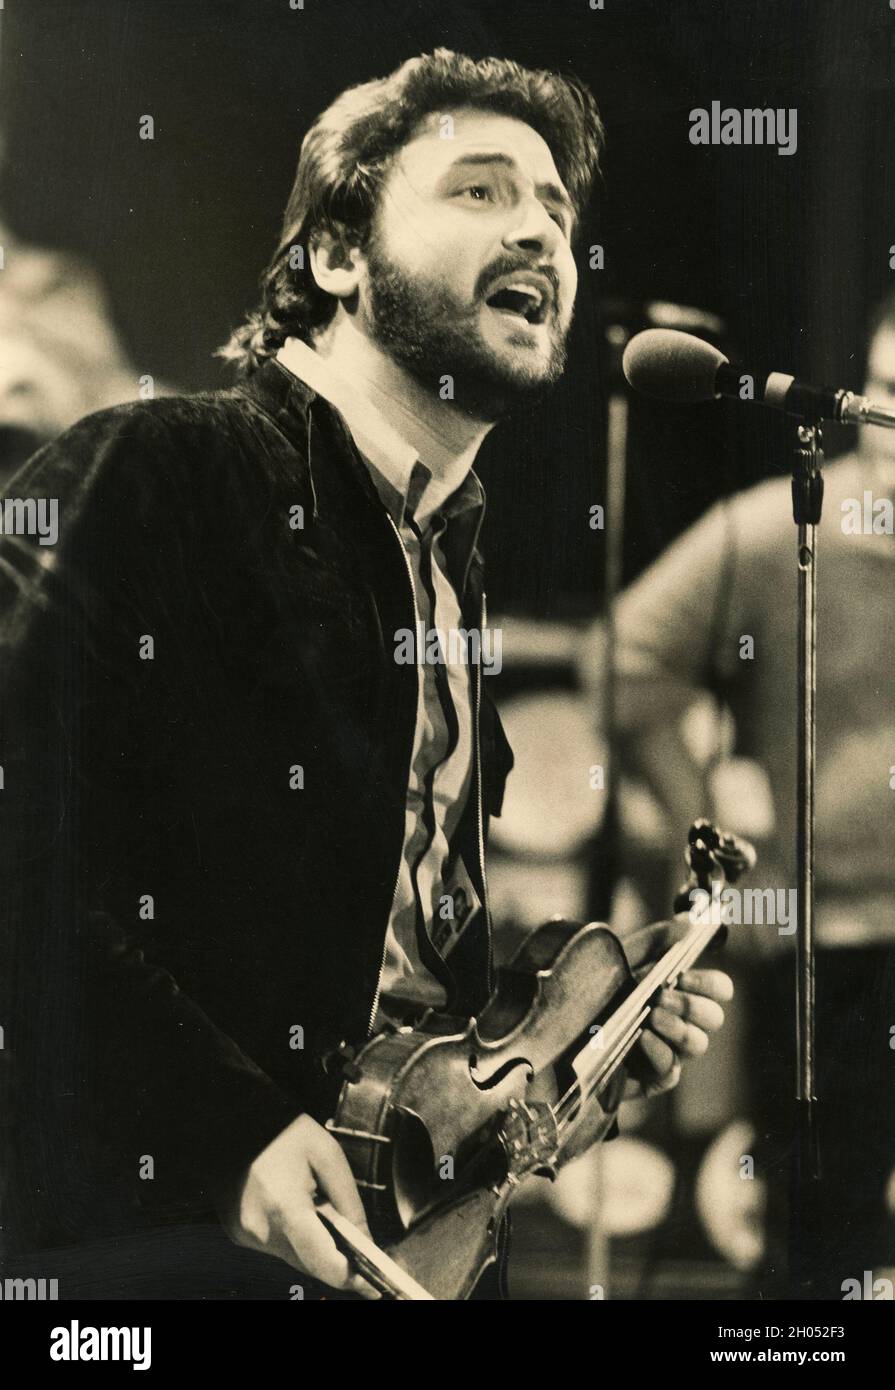 Italian musician, singer and composer Pino Donaggio, 1970s Stock Photo